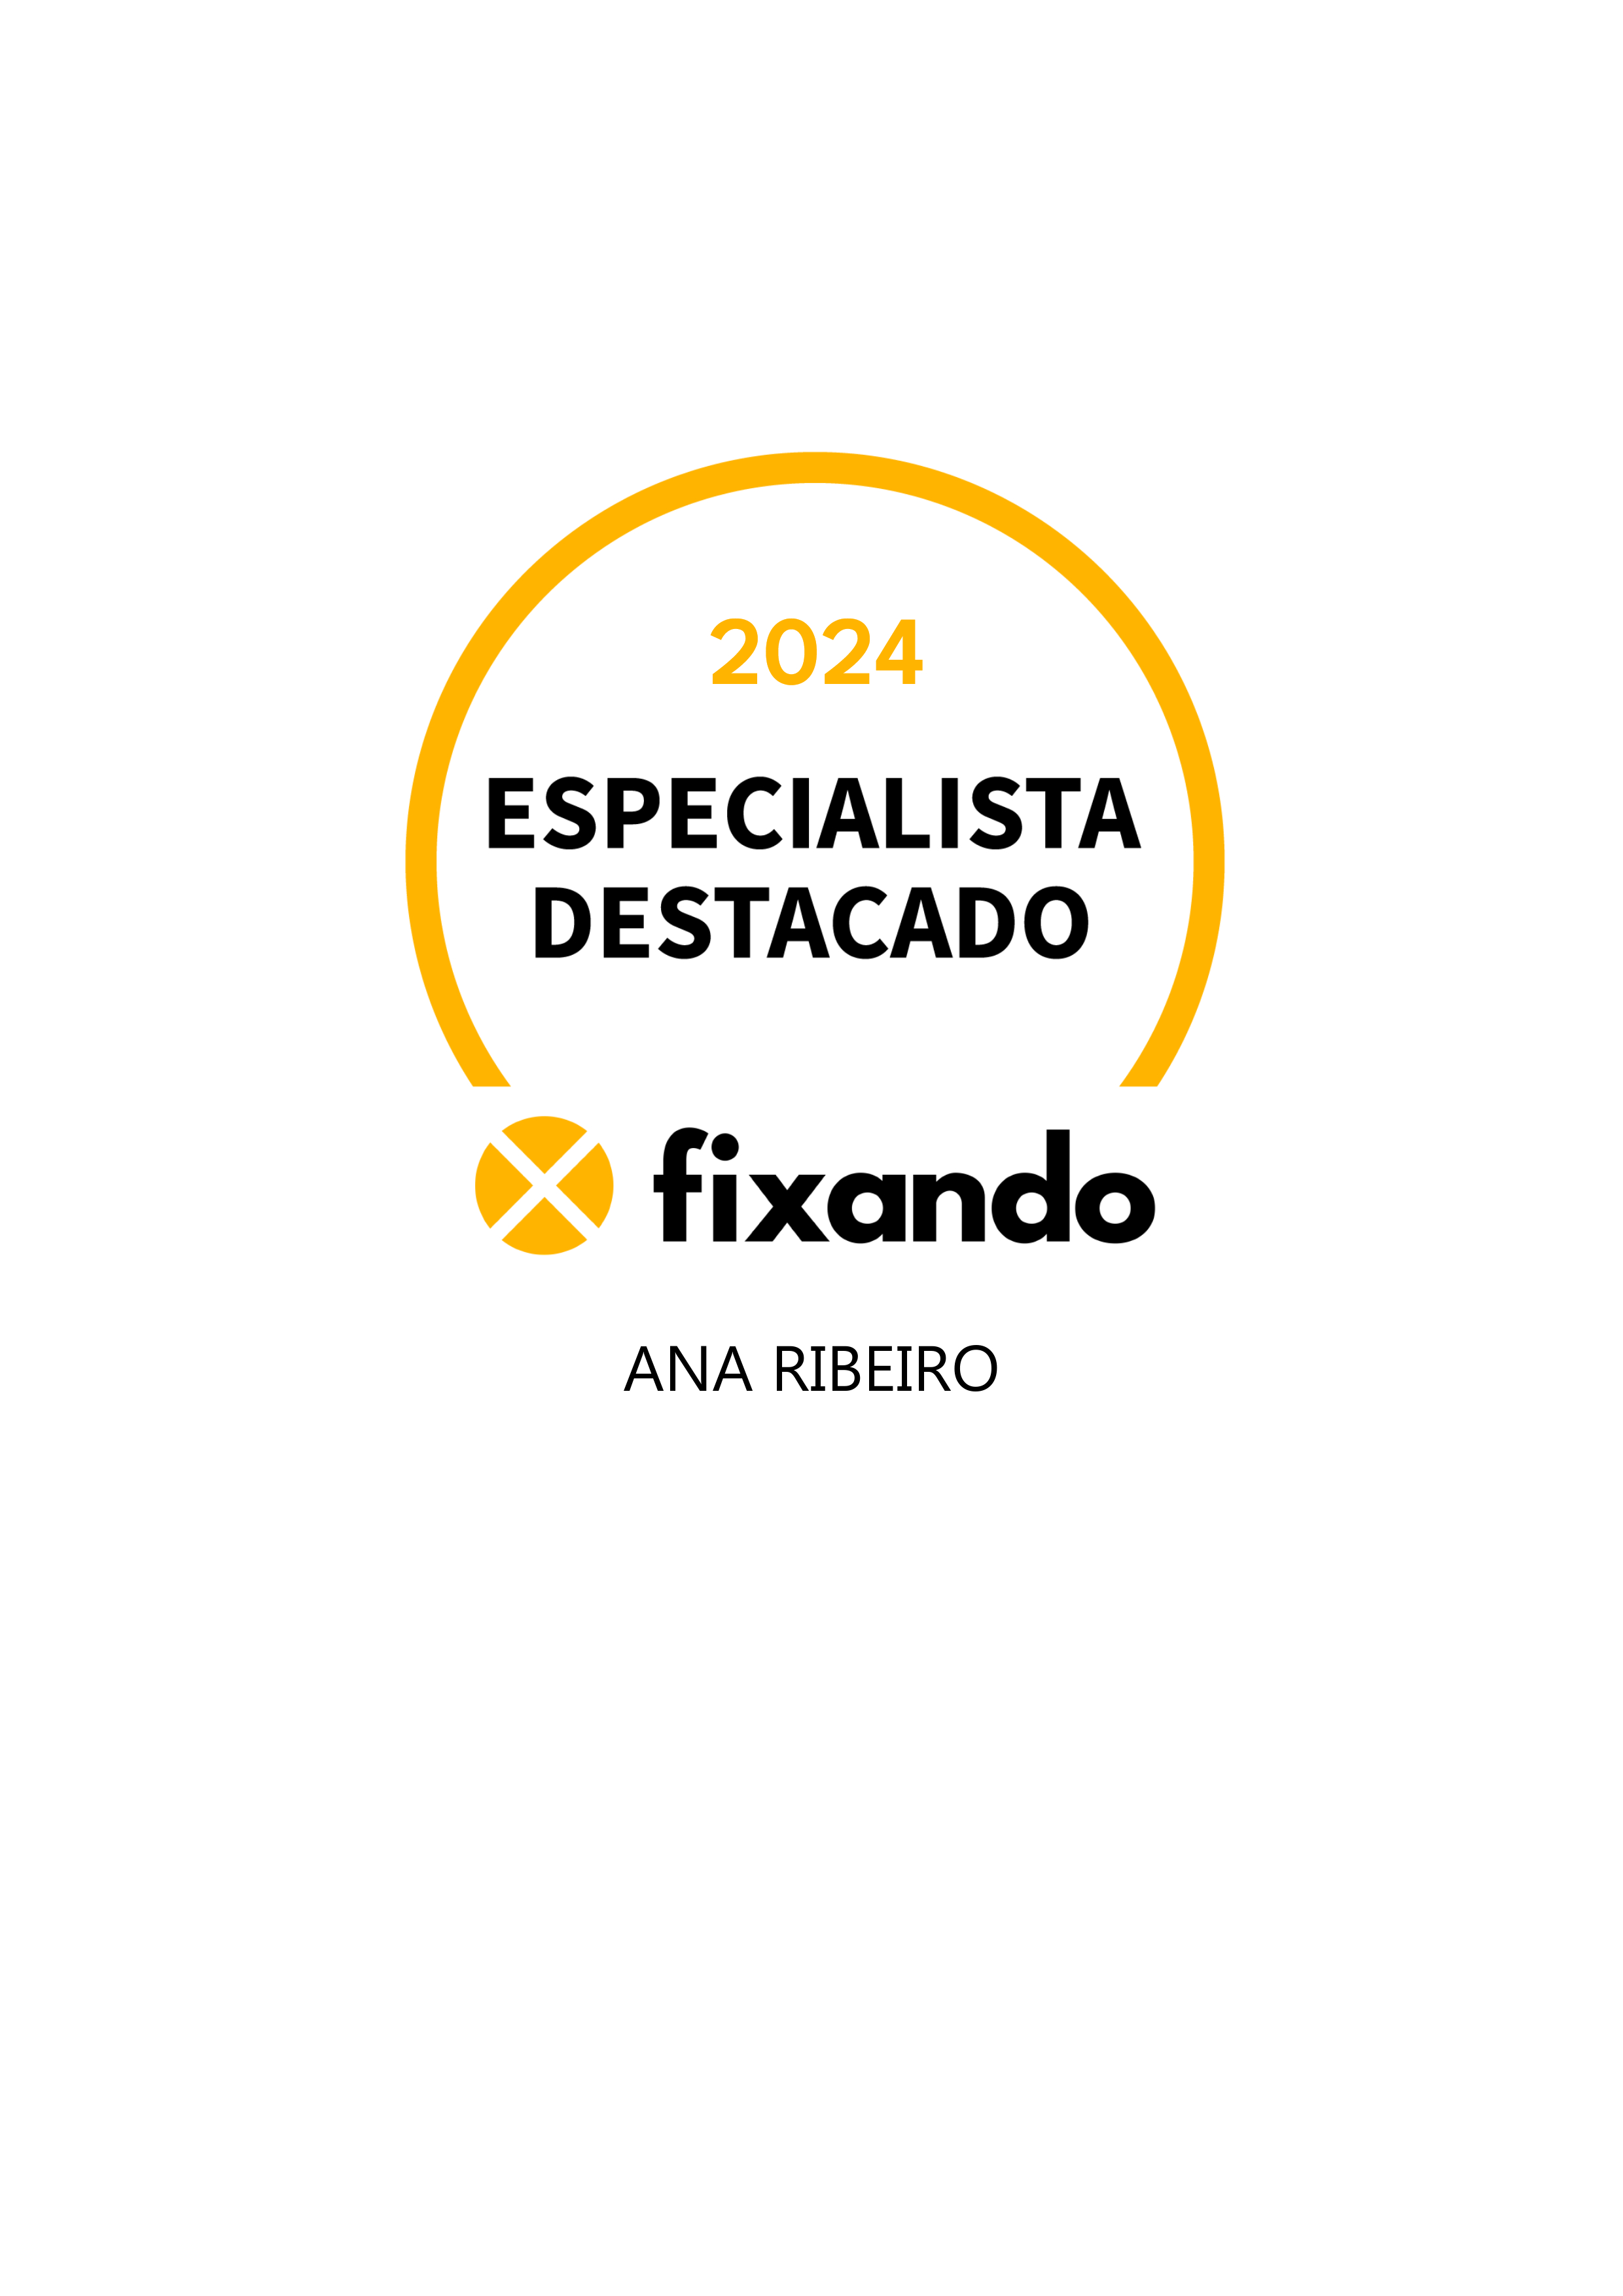 Ana Ribeiro - Lisboa - Design de Logotipos